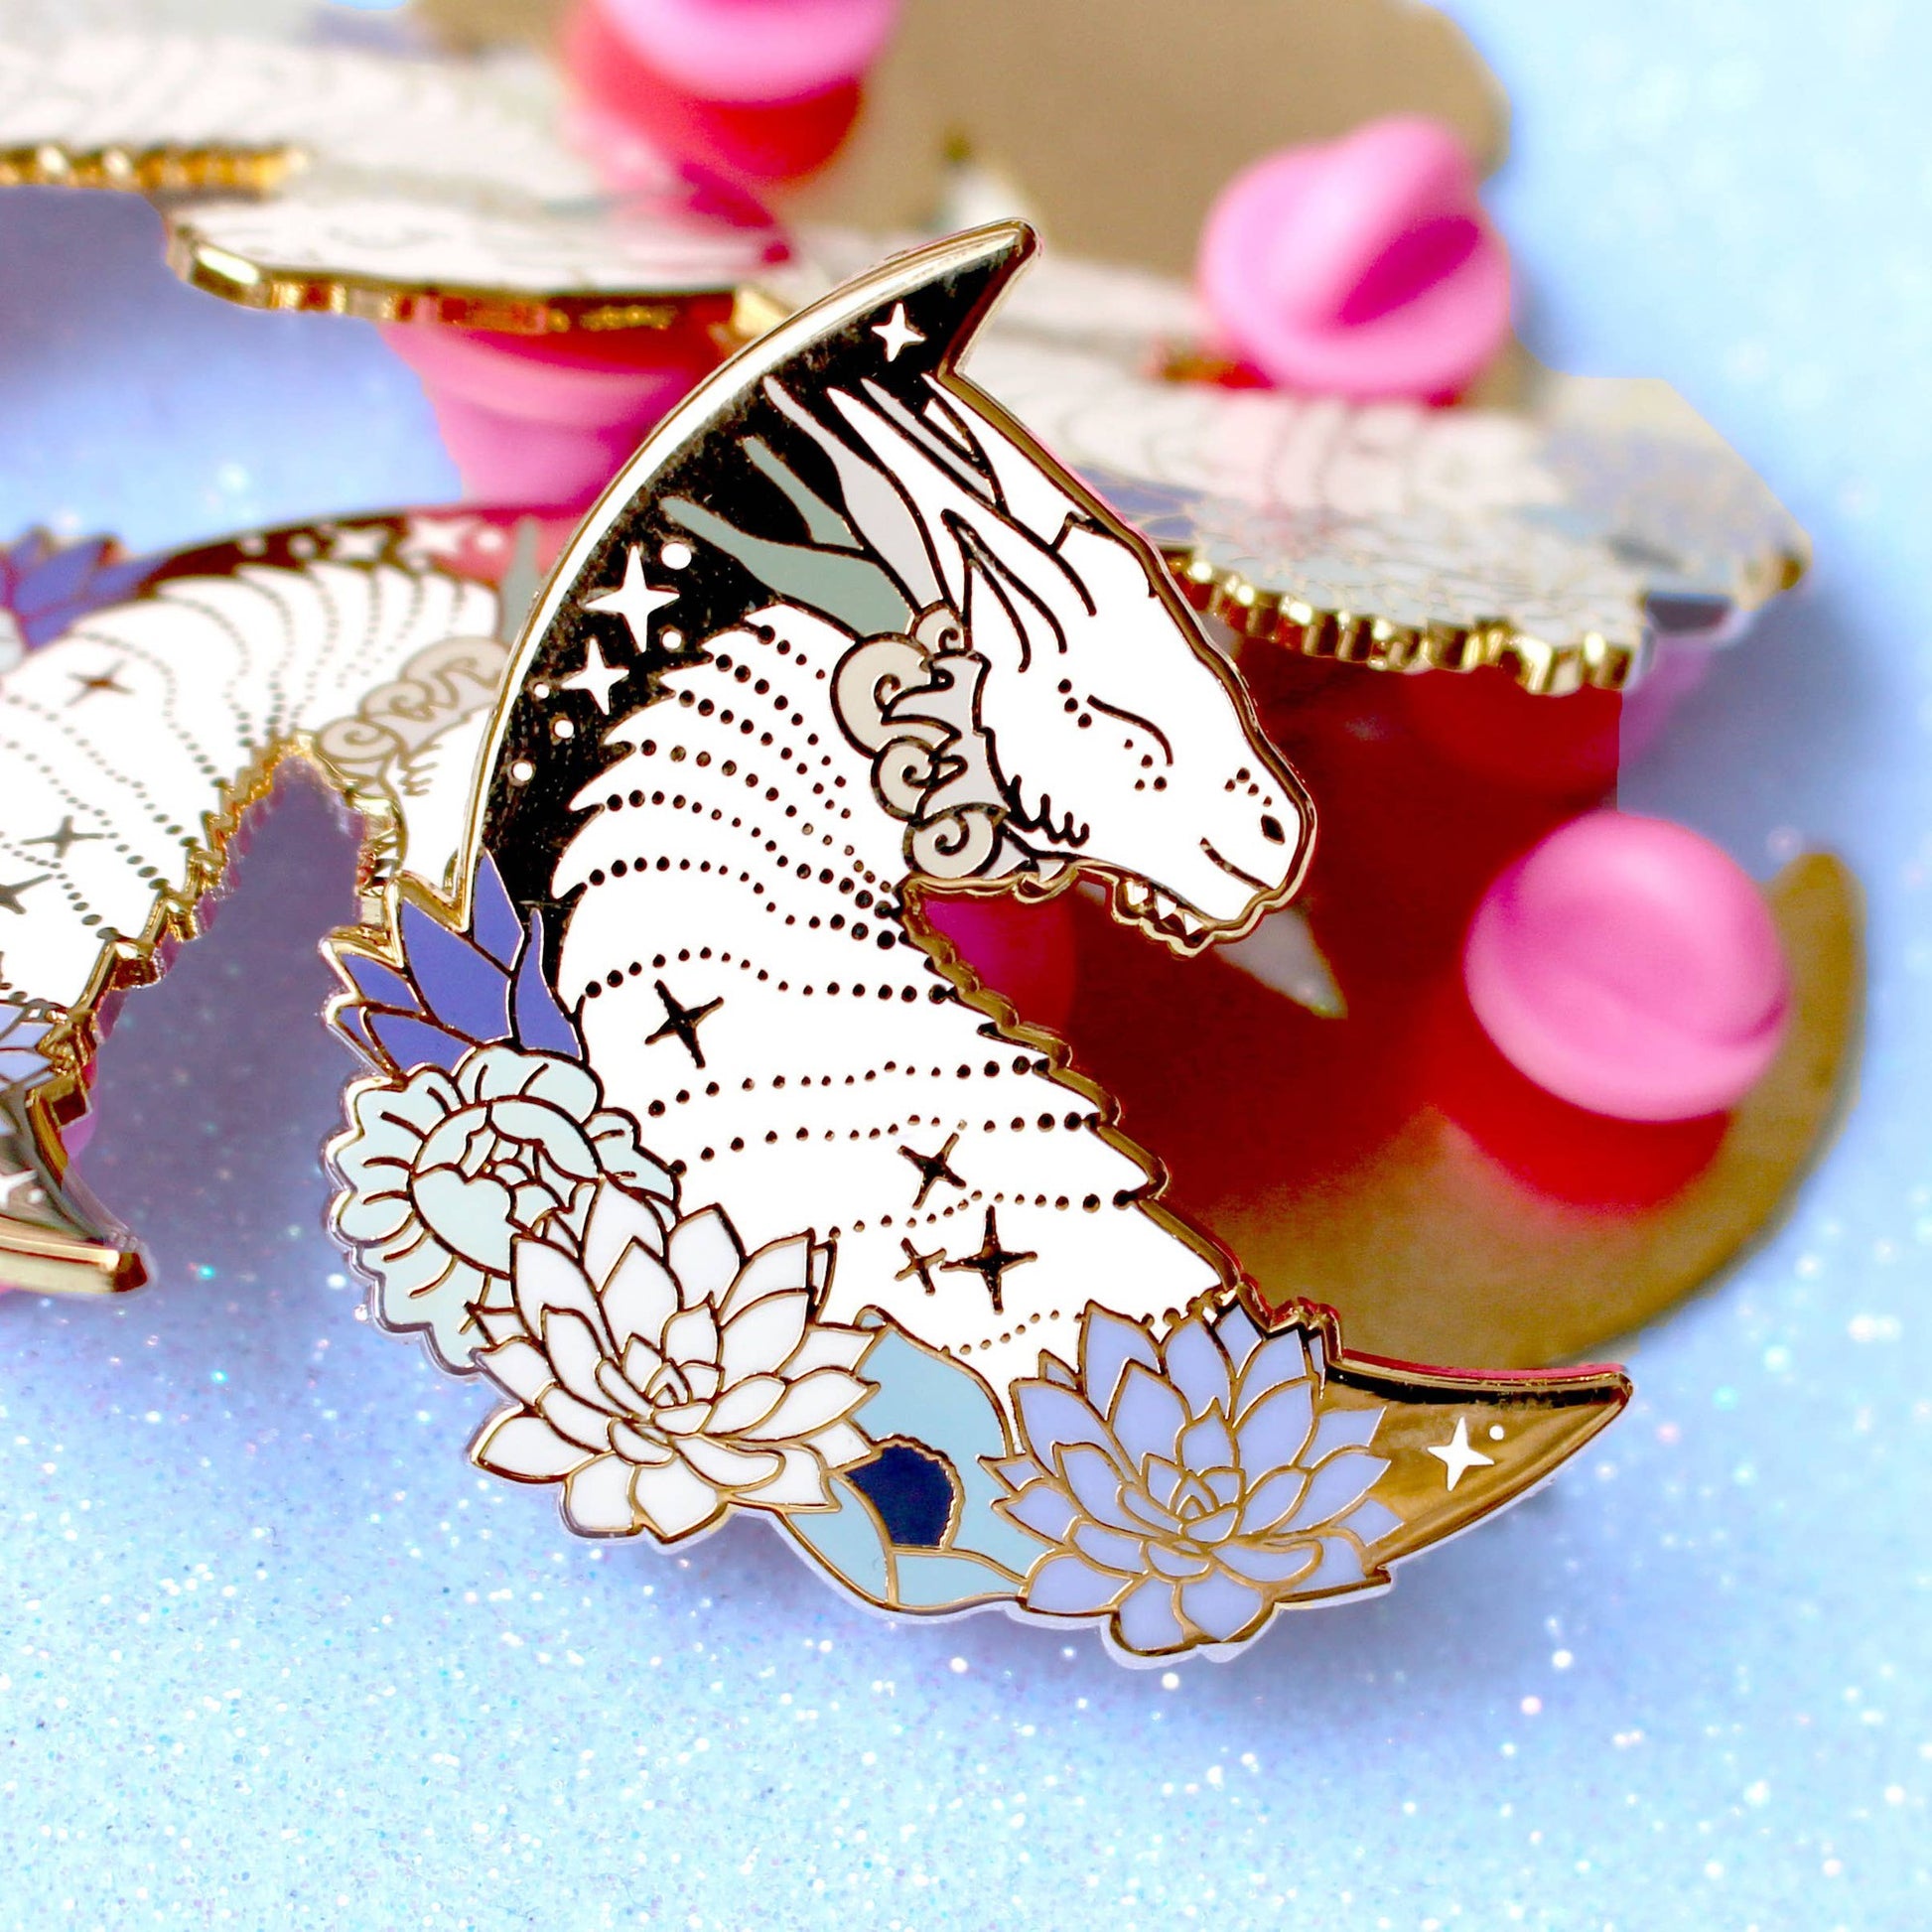 Mythical Flower Dragon Enamel Pin | Artist-Designed Hard Enamel Pin